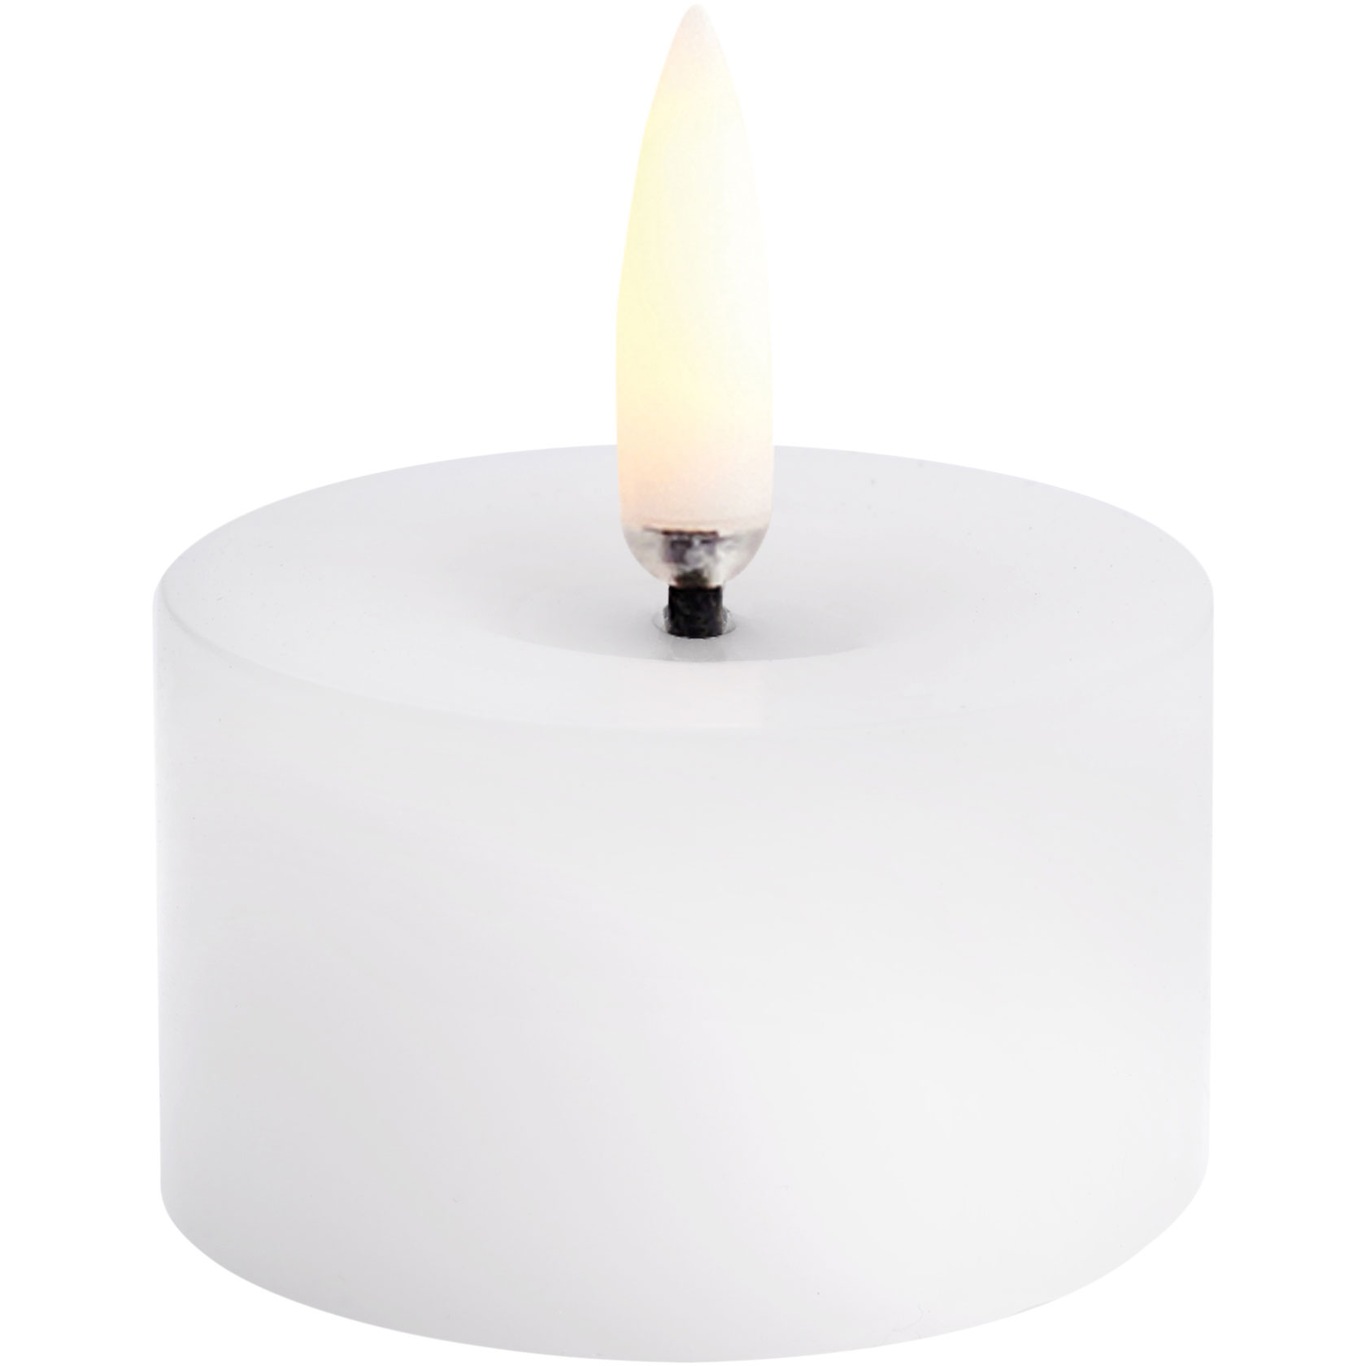 LED Kubbelys Smeltet Nordic White, 5x2,8 cm